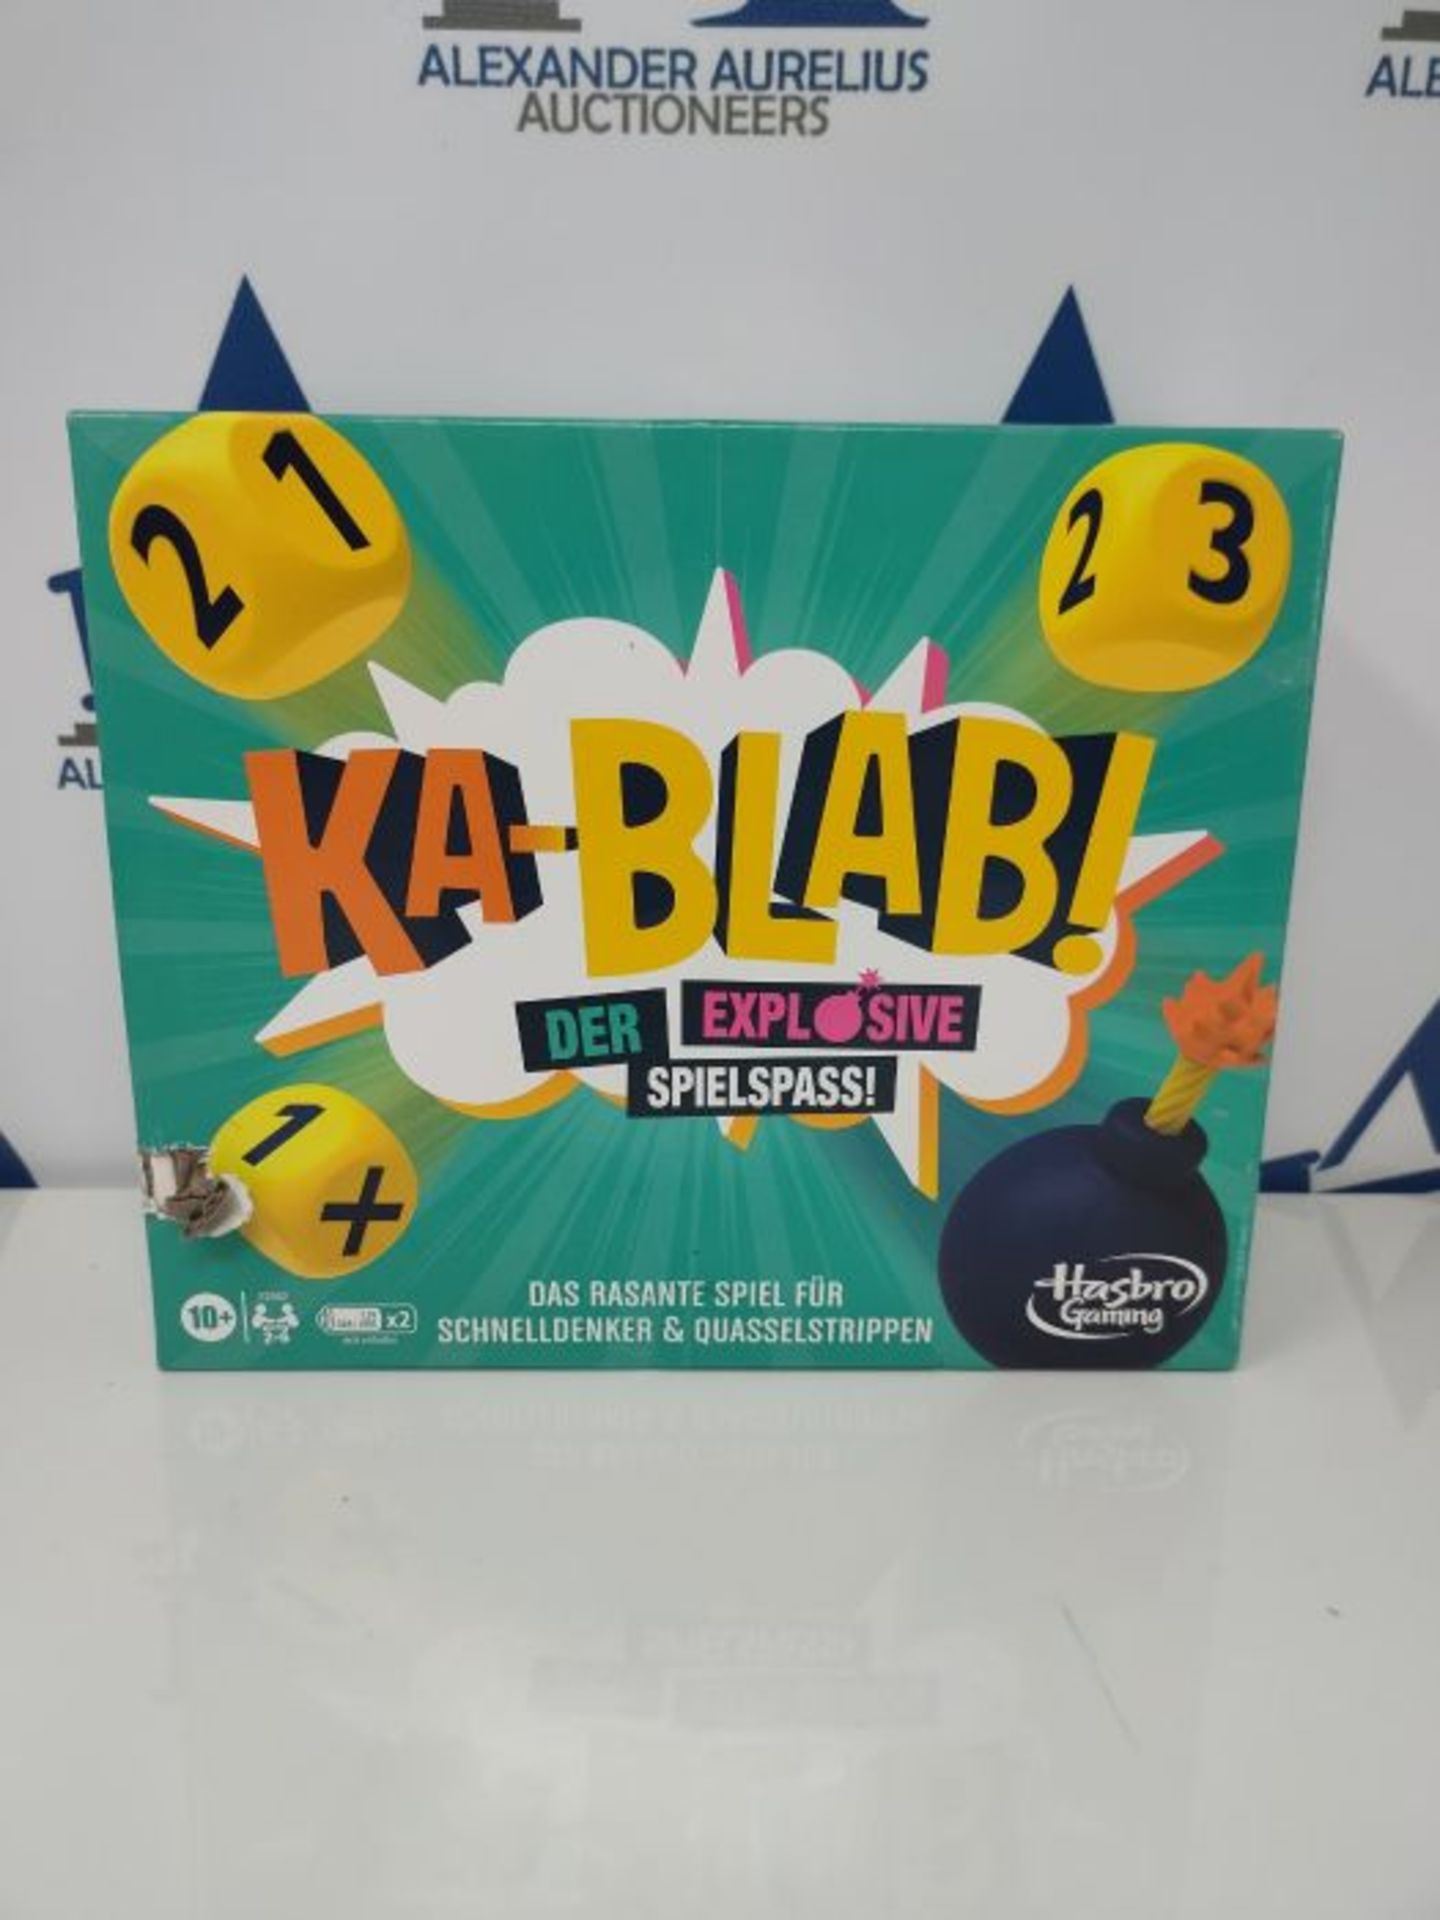 Ka-Blab! Spiel für Familien, Teenager und Spiel für Kinder ab 10 Jahren, Kablab Spie - Image 2 of 3